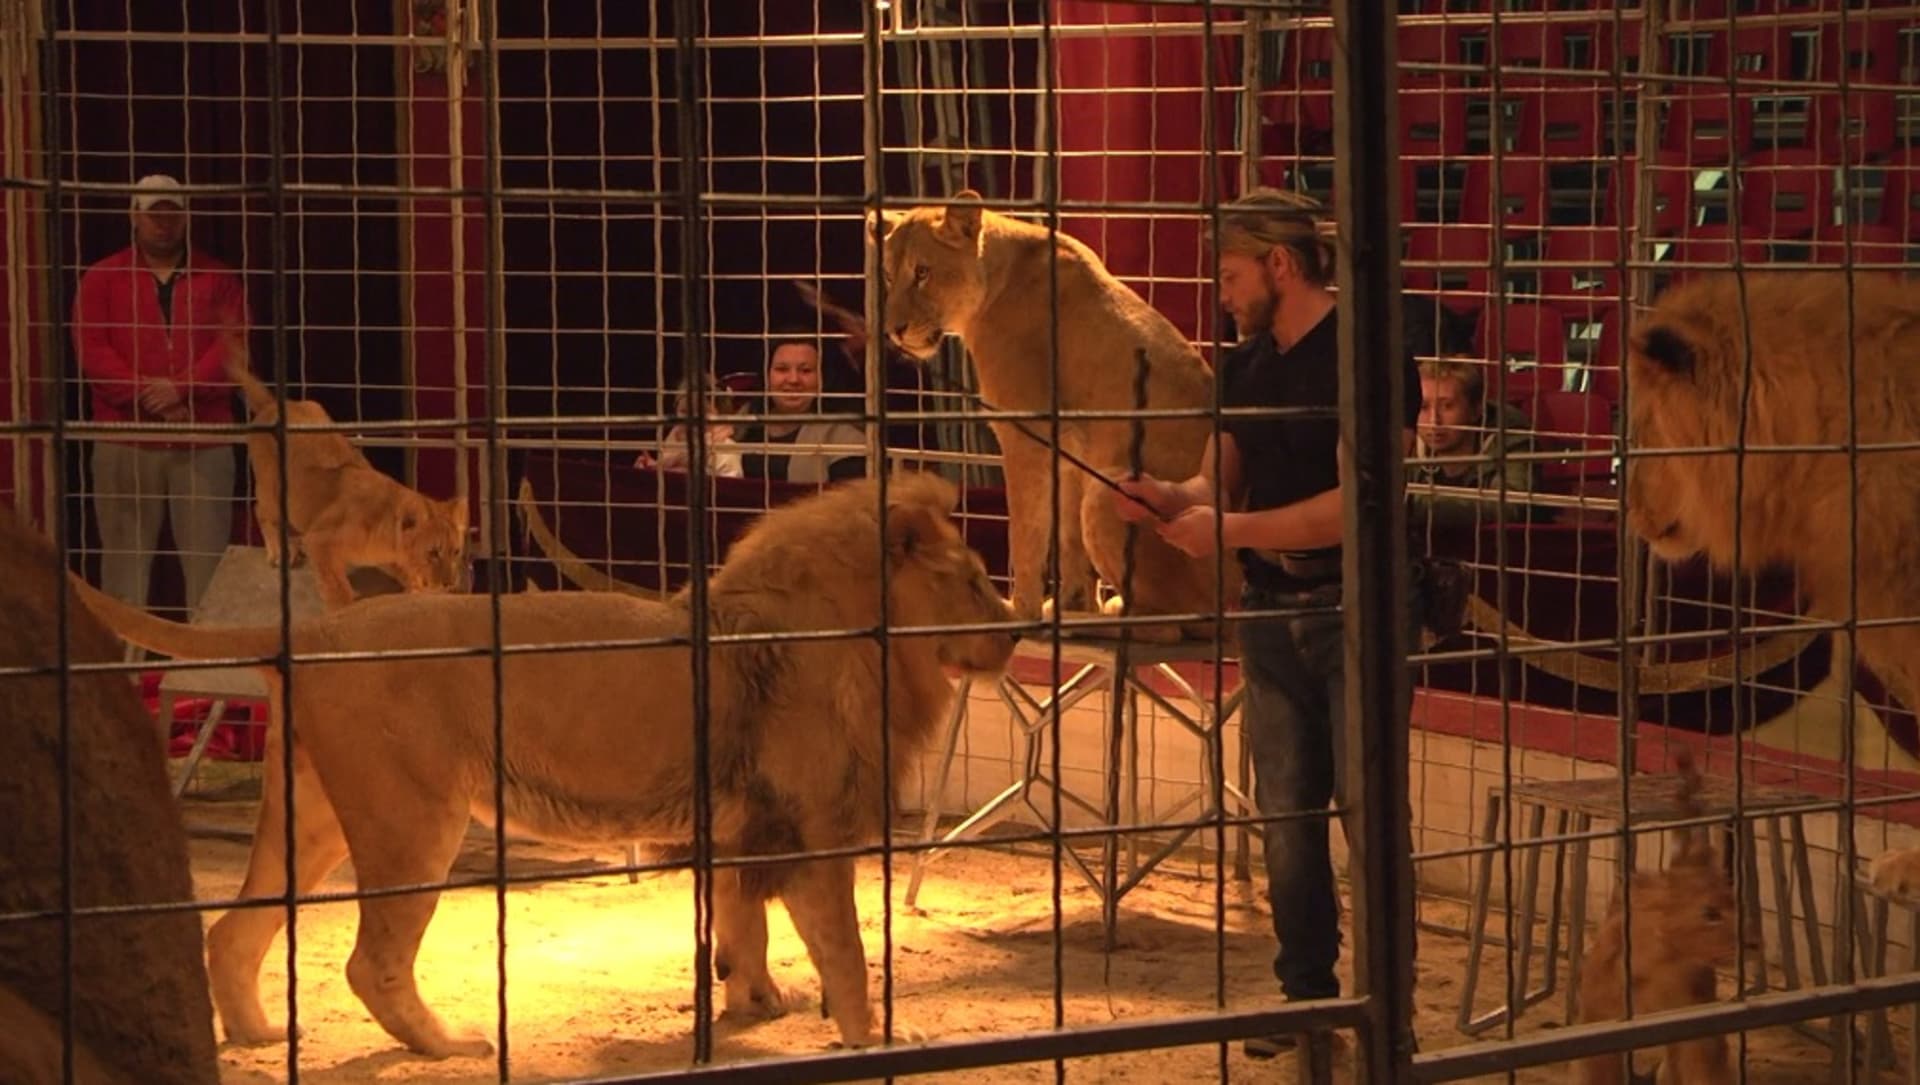 Divoká zvířata v cirkusech rozdělují veřejnost